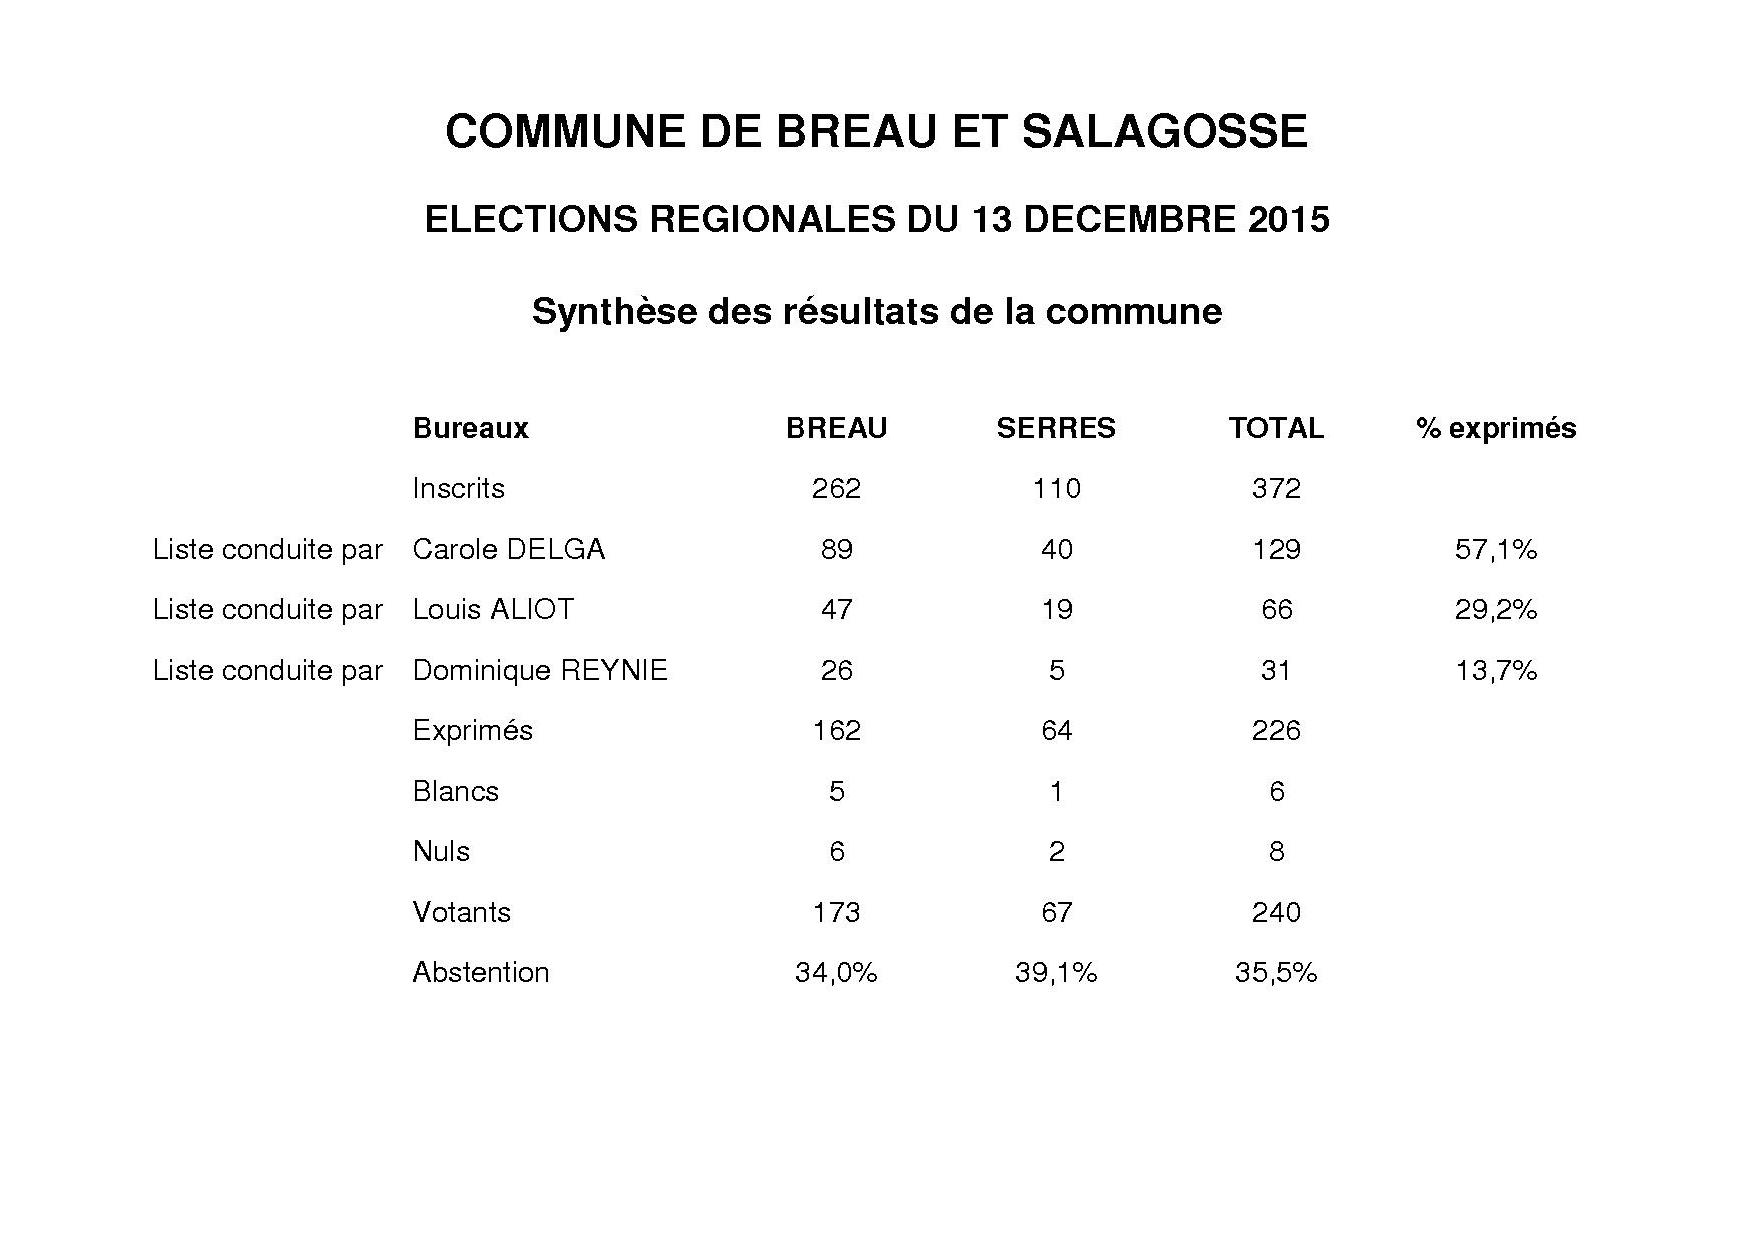 Elections régionales : résultats du 2nd tour du scrutin du 13/12/2015